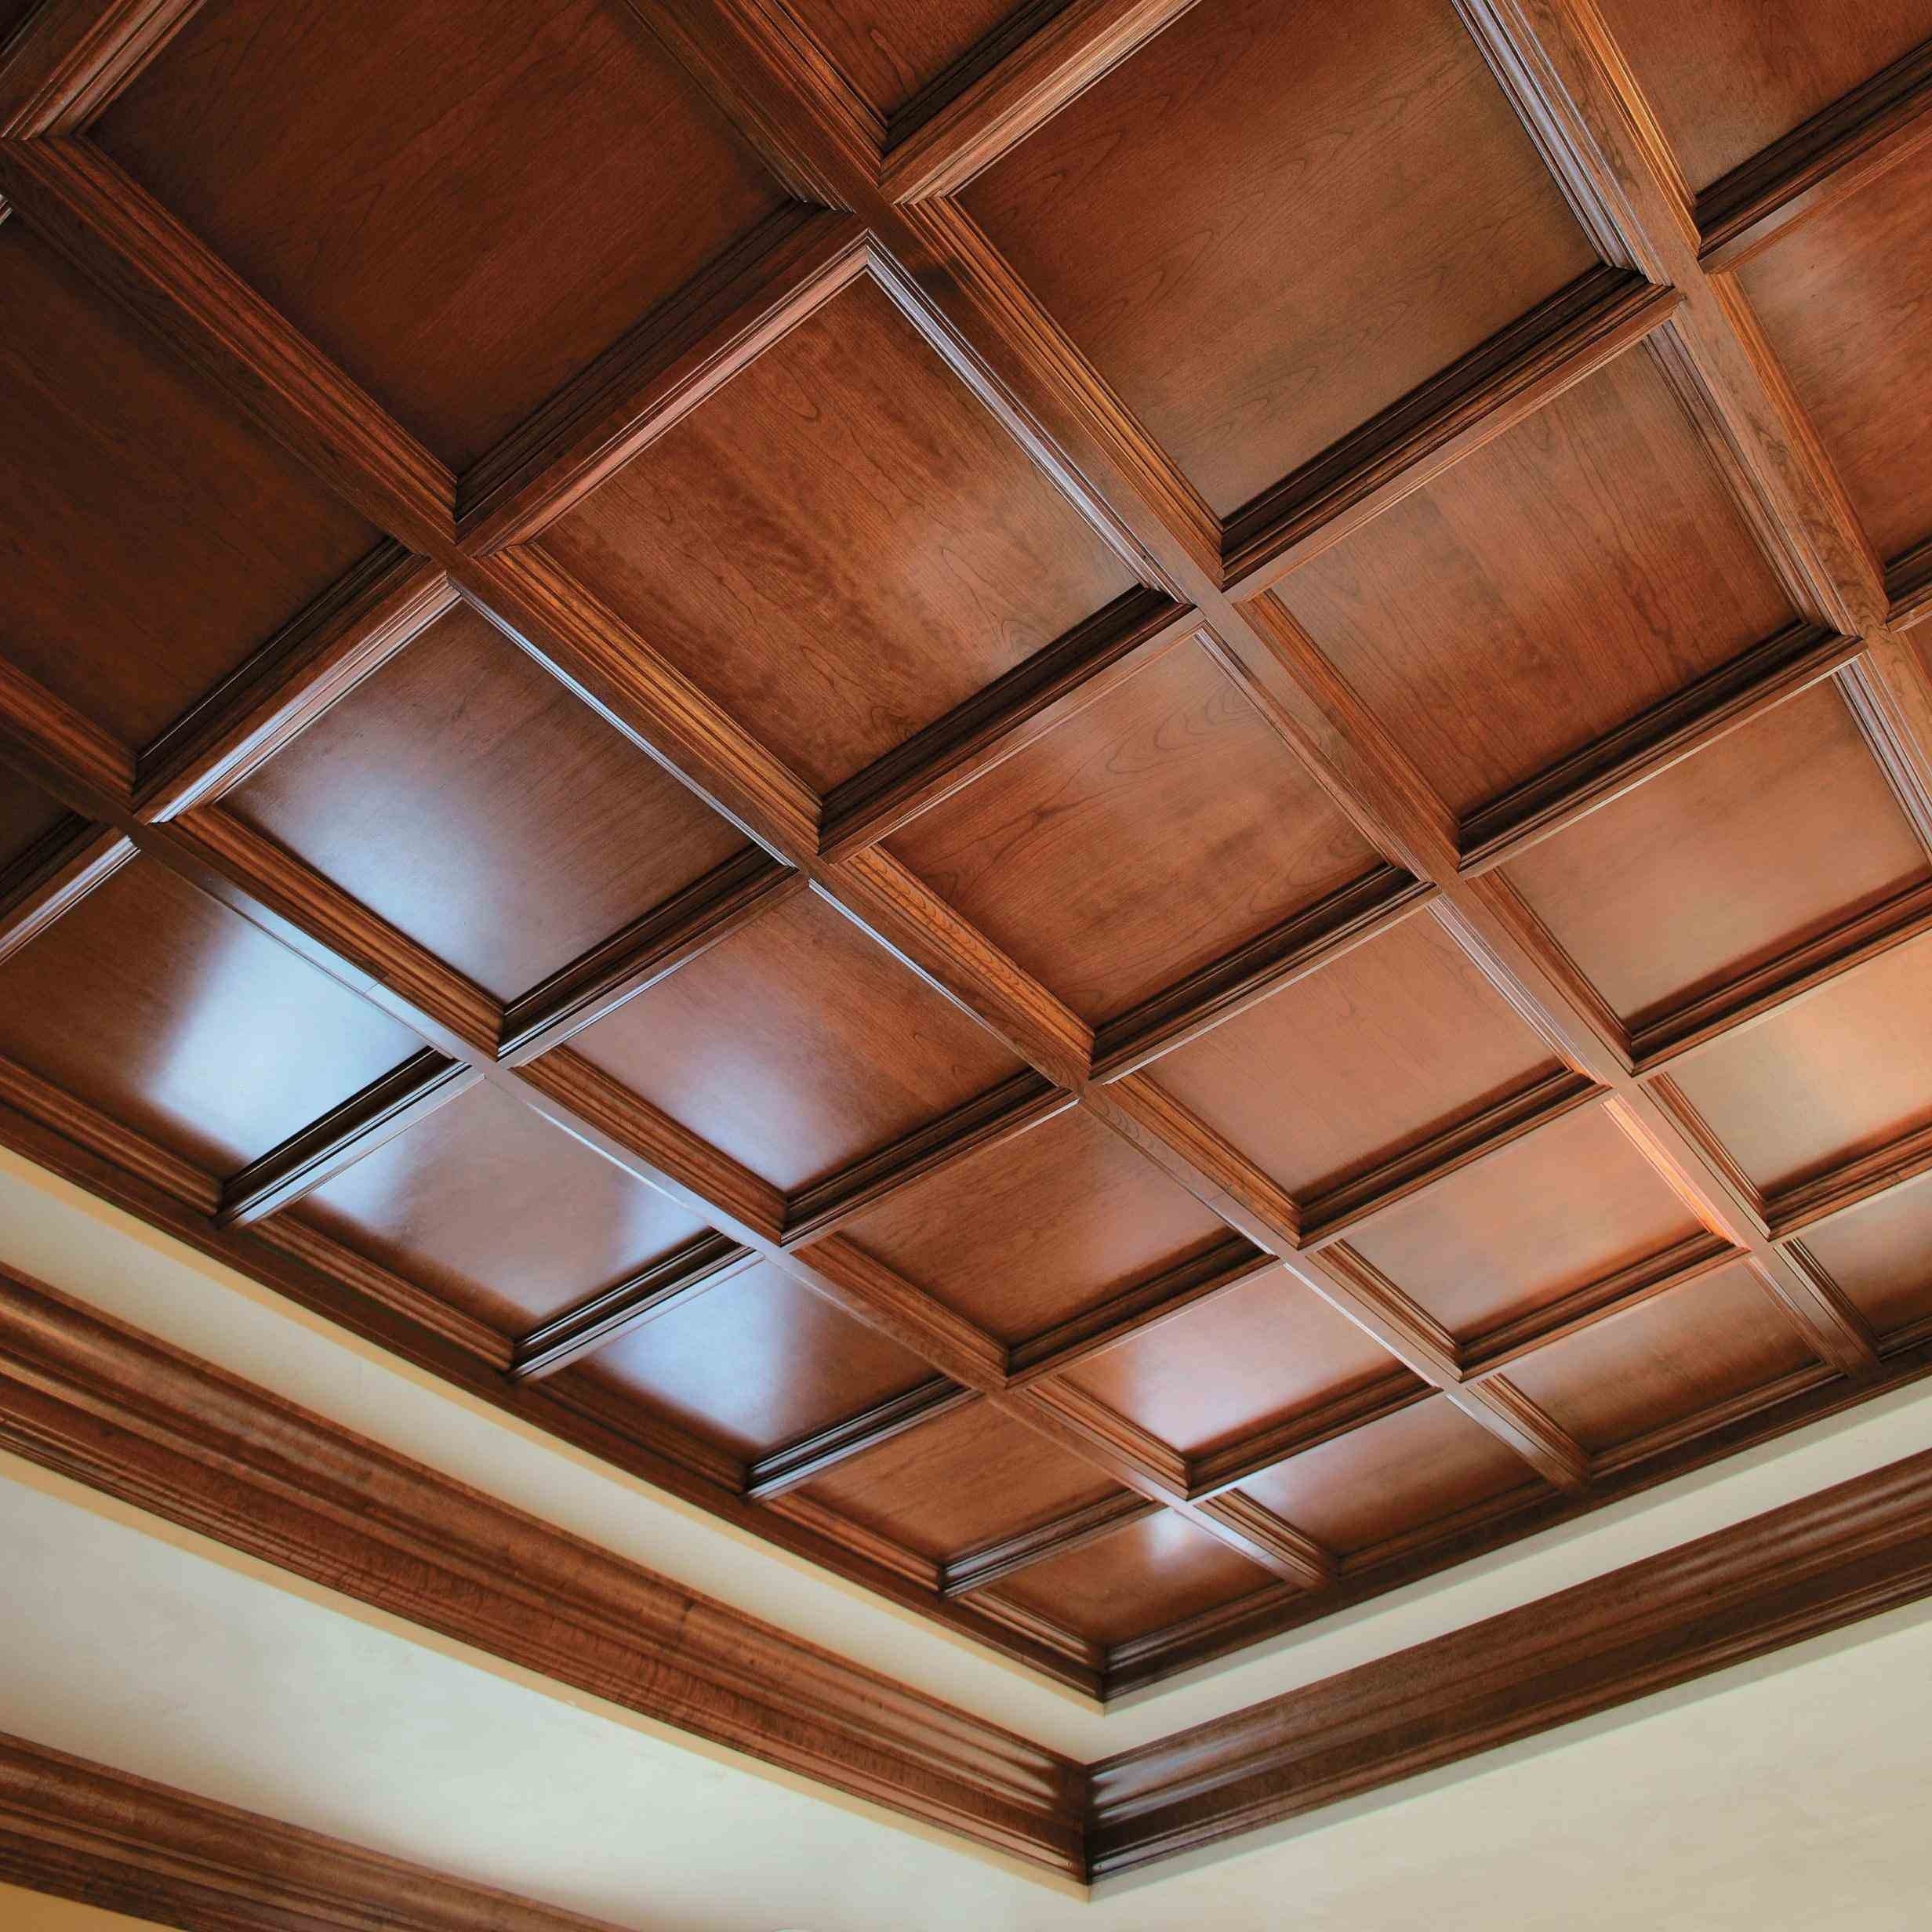 Drop Ceiling Tiles Wood Look Drop Ceiling Tiles Wood Look basement drop ceiling tiles pinteres 2464 X 2464